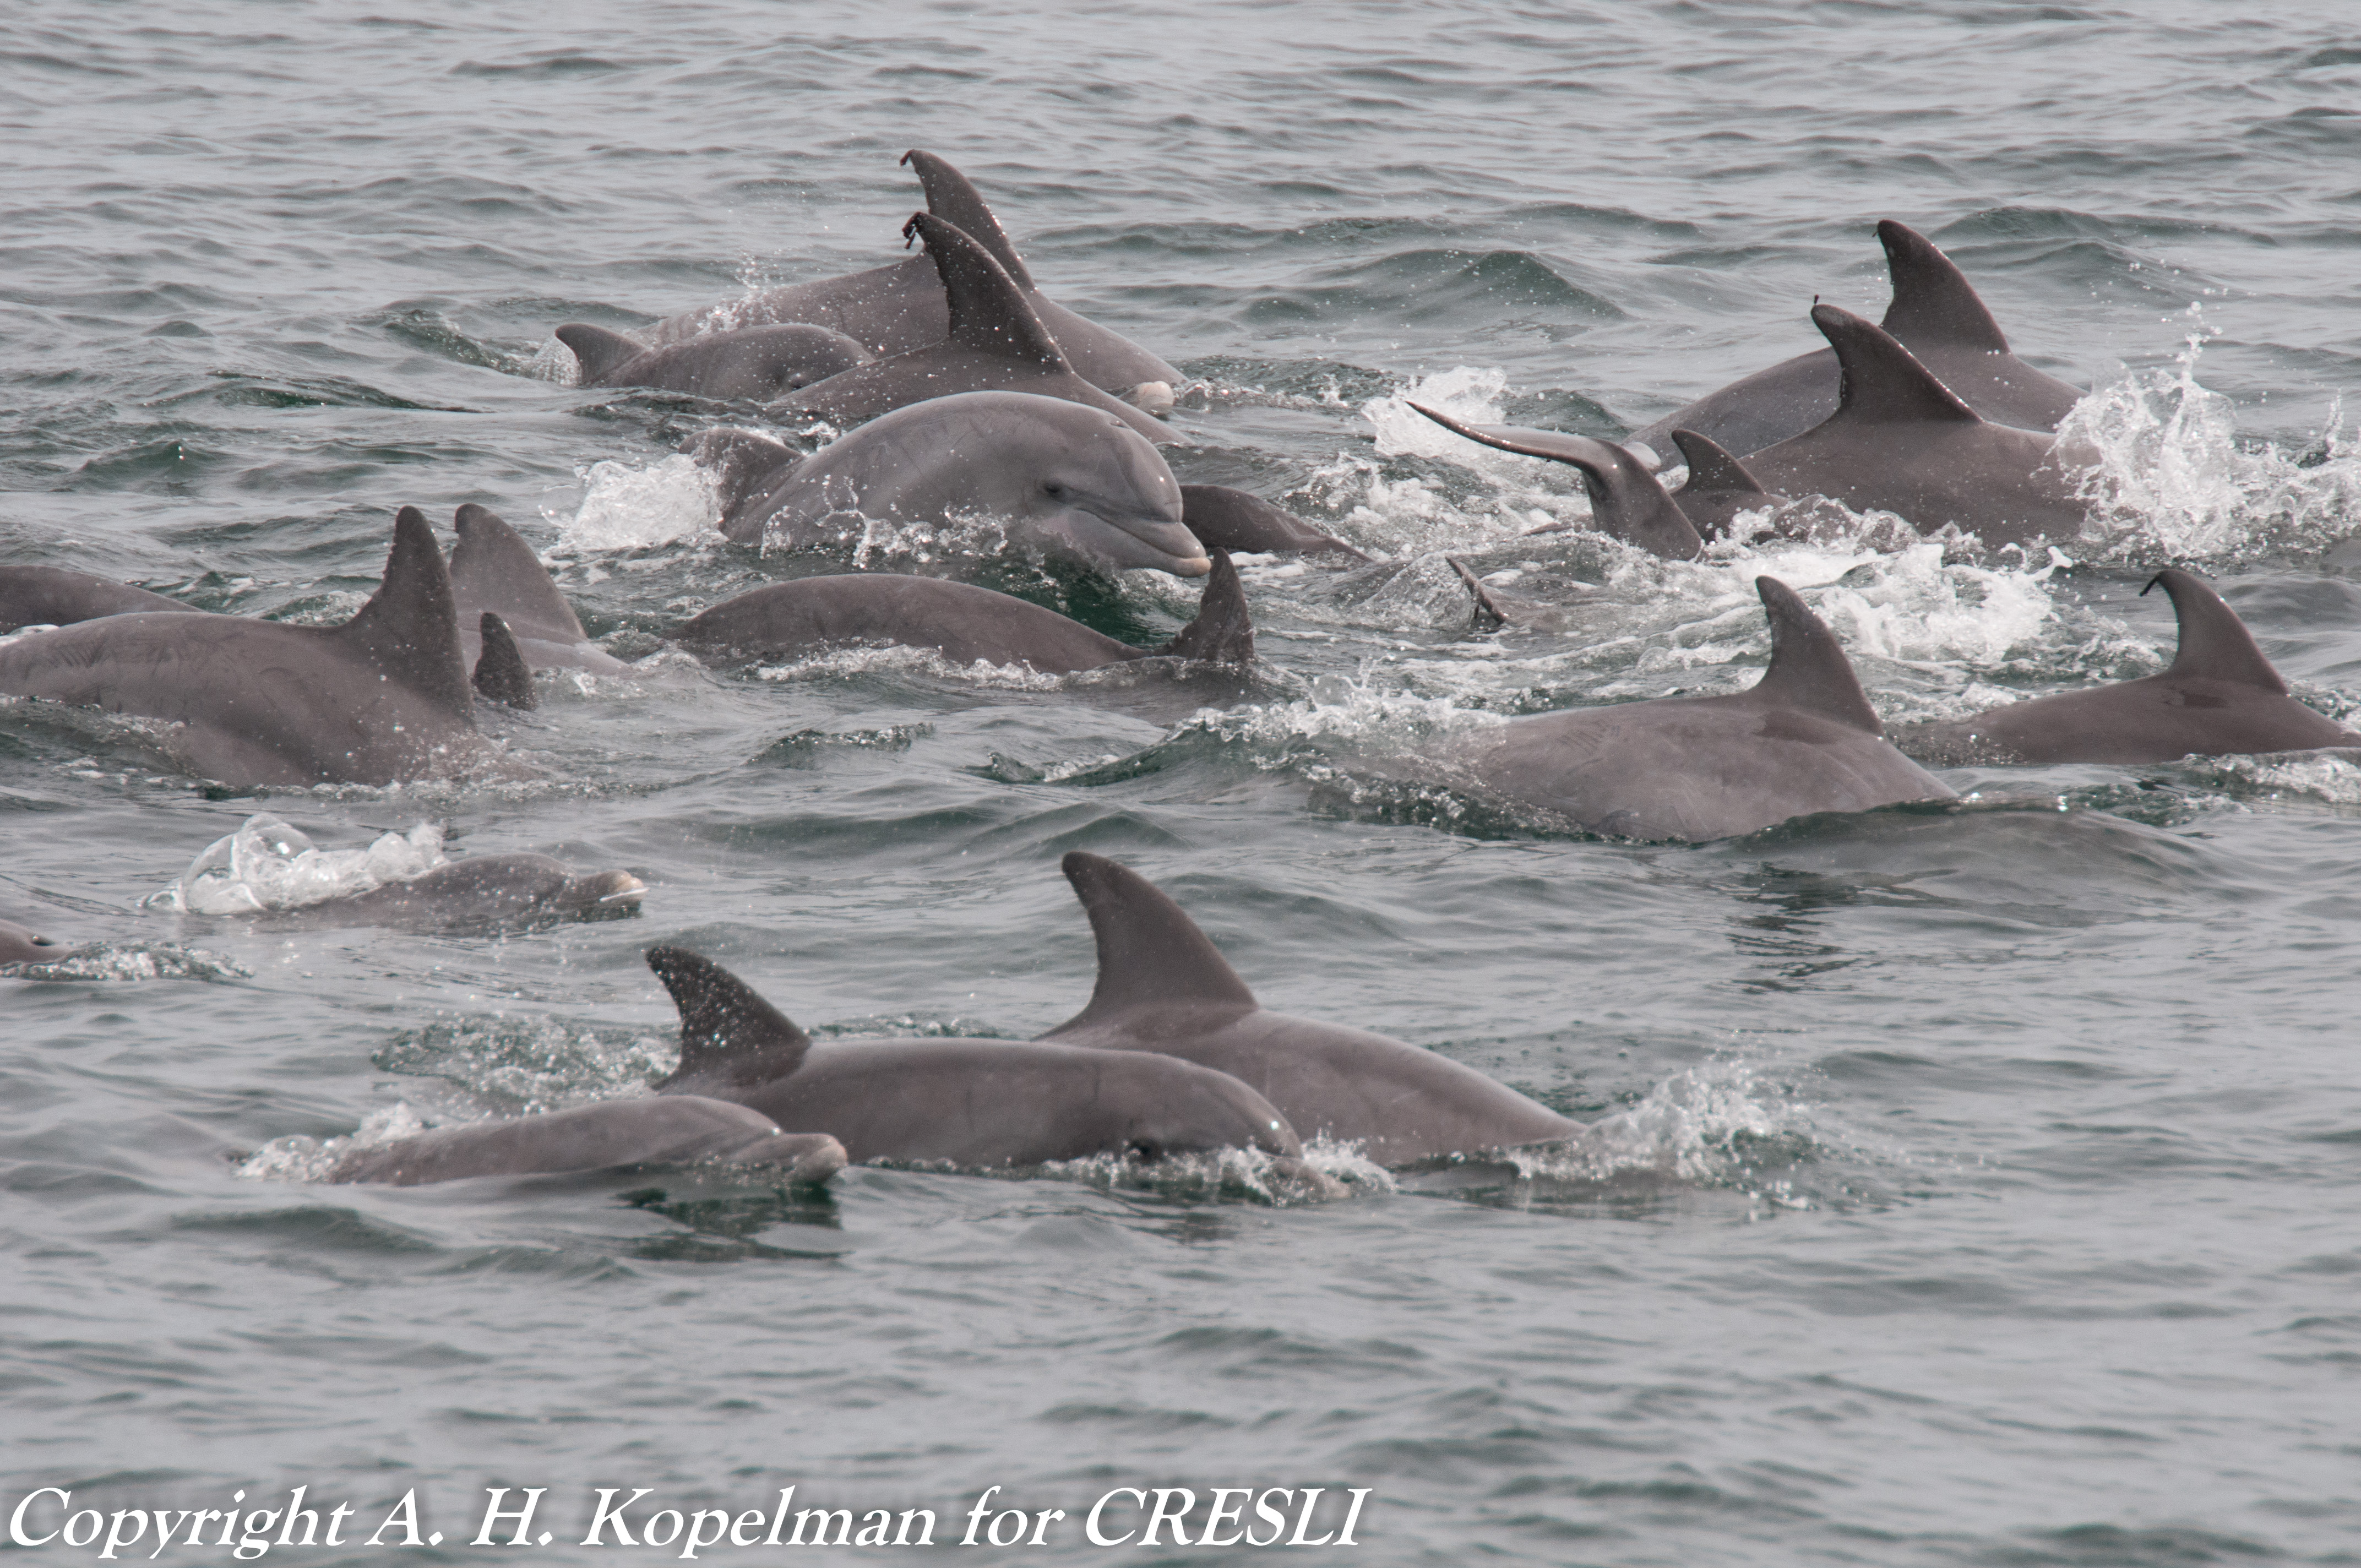 Atlantic bottlenose dolphins